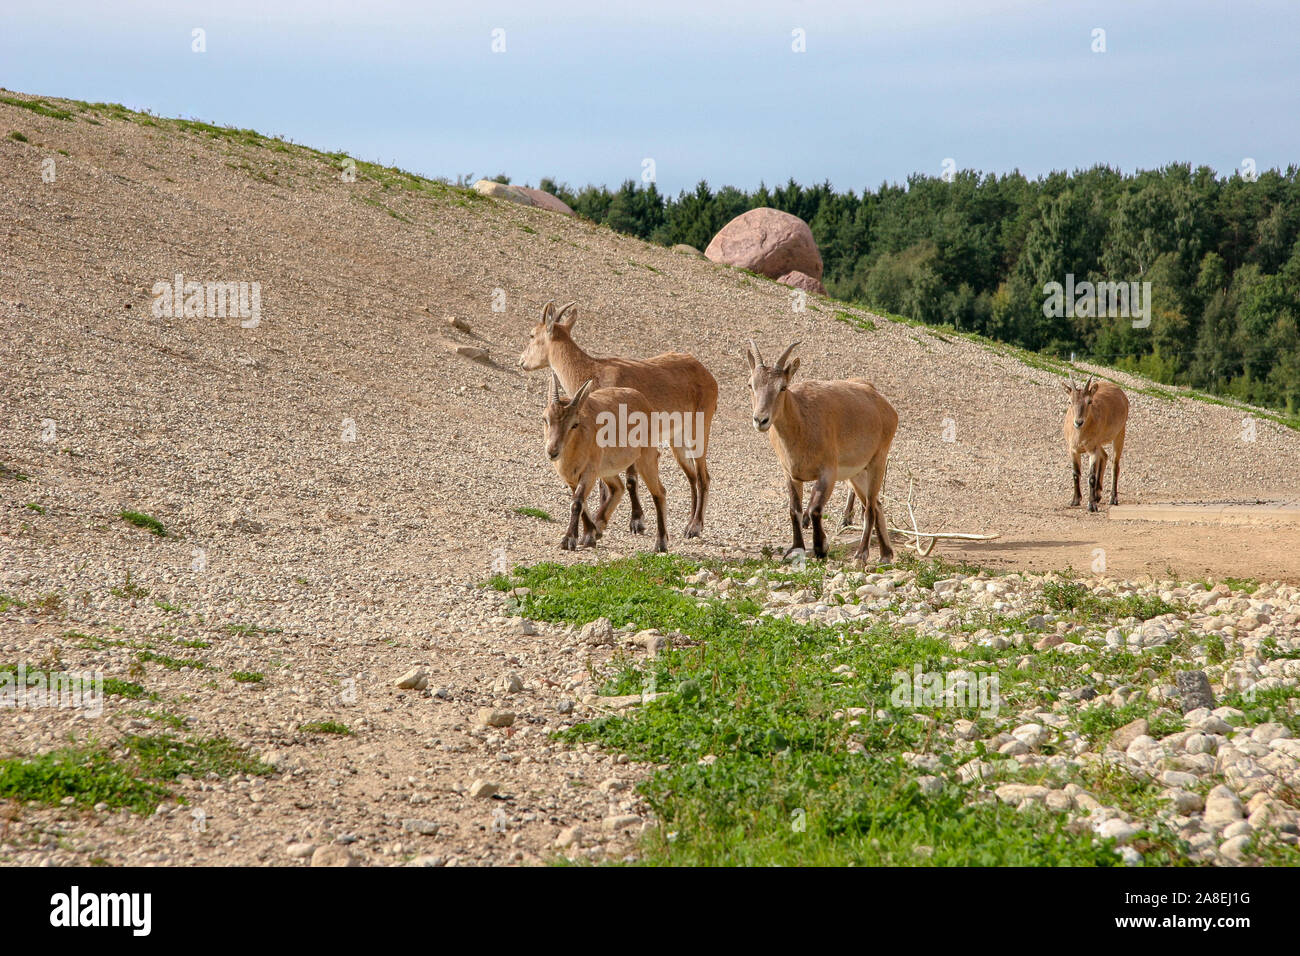 Eine Herde von vier Bergziegen mit brauner Wolle Spaziergänge entlang der Hügel bei sonnigem Wetter. Sonnig. Es gibt grüne Gras auf dem Boden. Wald auf dem backgrou Stockfoto